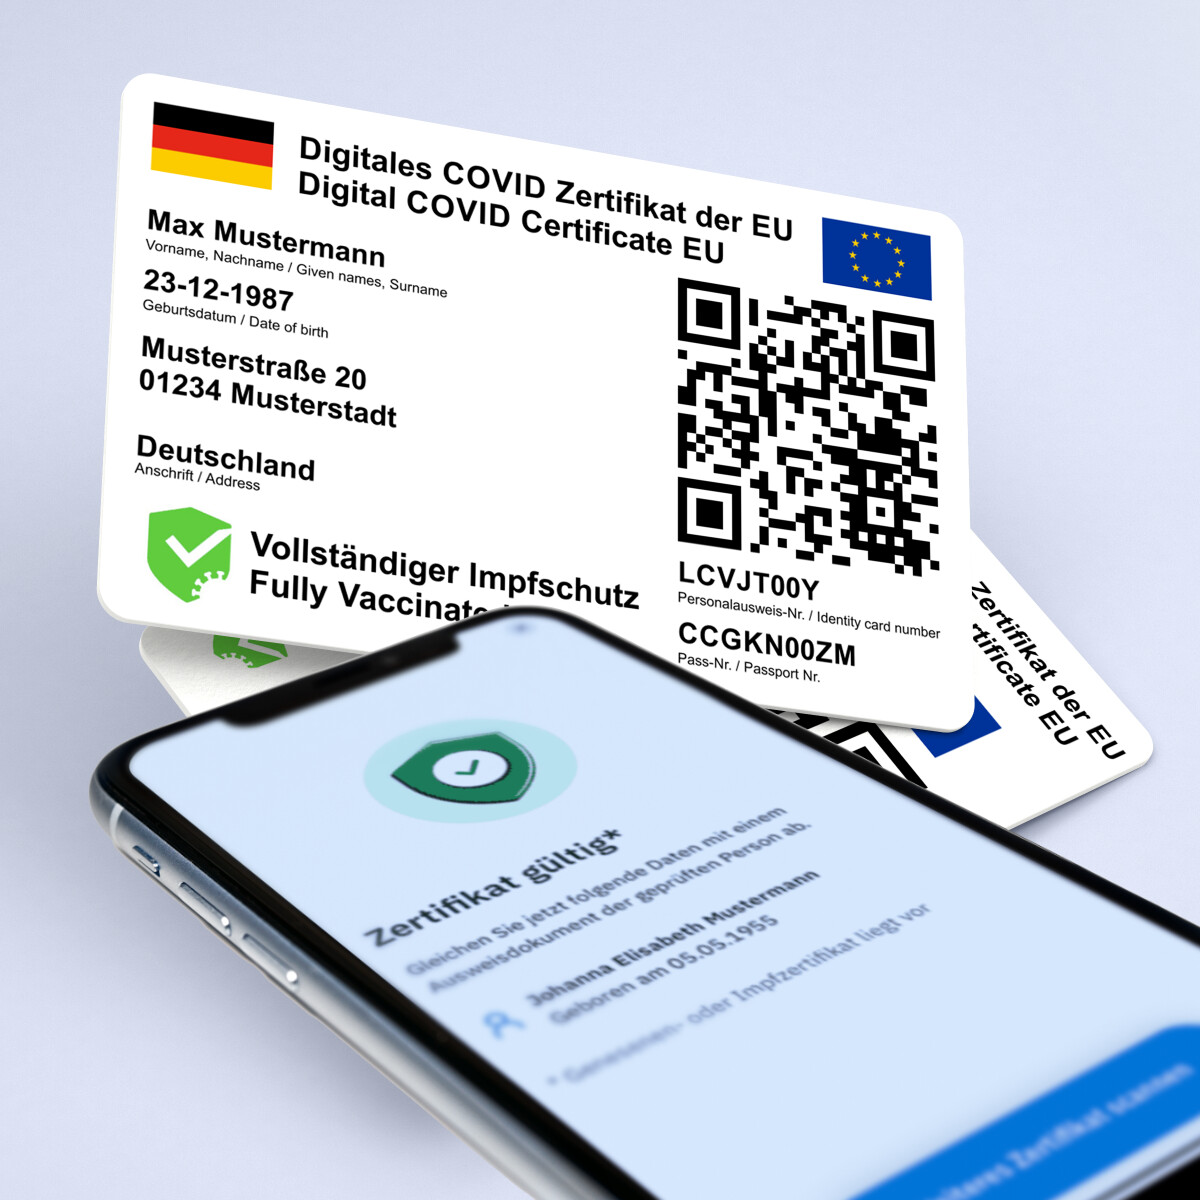 Ihr digitales COVID-19 Impf-Zertifikat der EU - ohne Lichtbild - auf eine Plastikkarte im Kreditkartenformat drucken lassen (DE/EN - Besonders für Auslandsreisen geeignet)